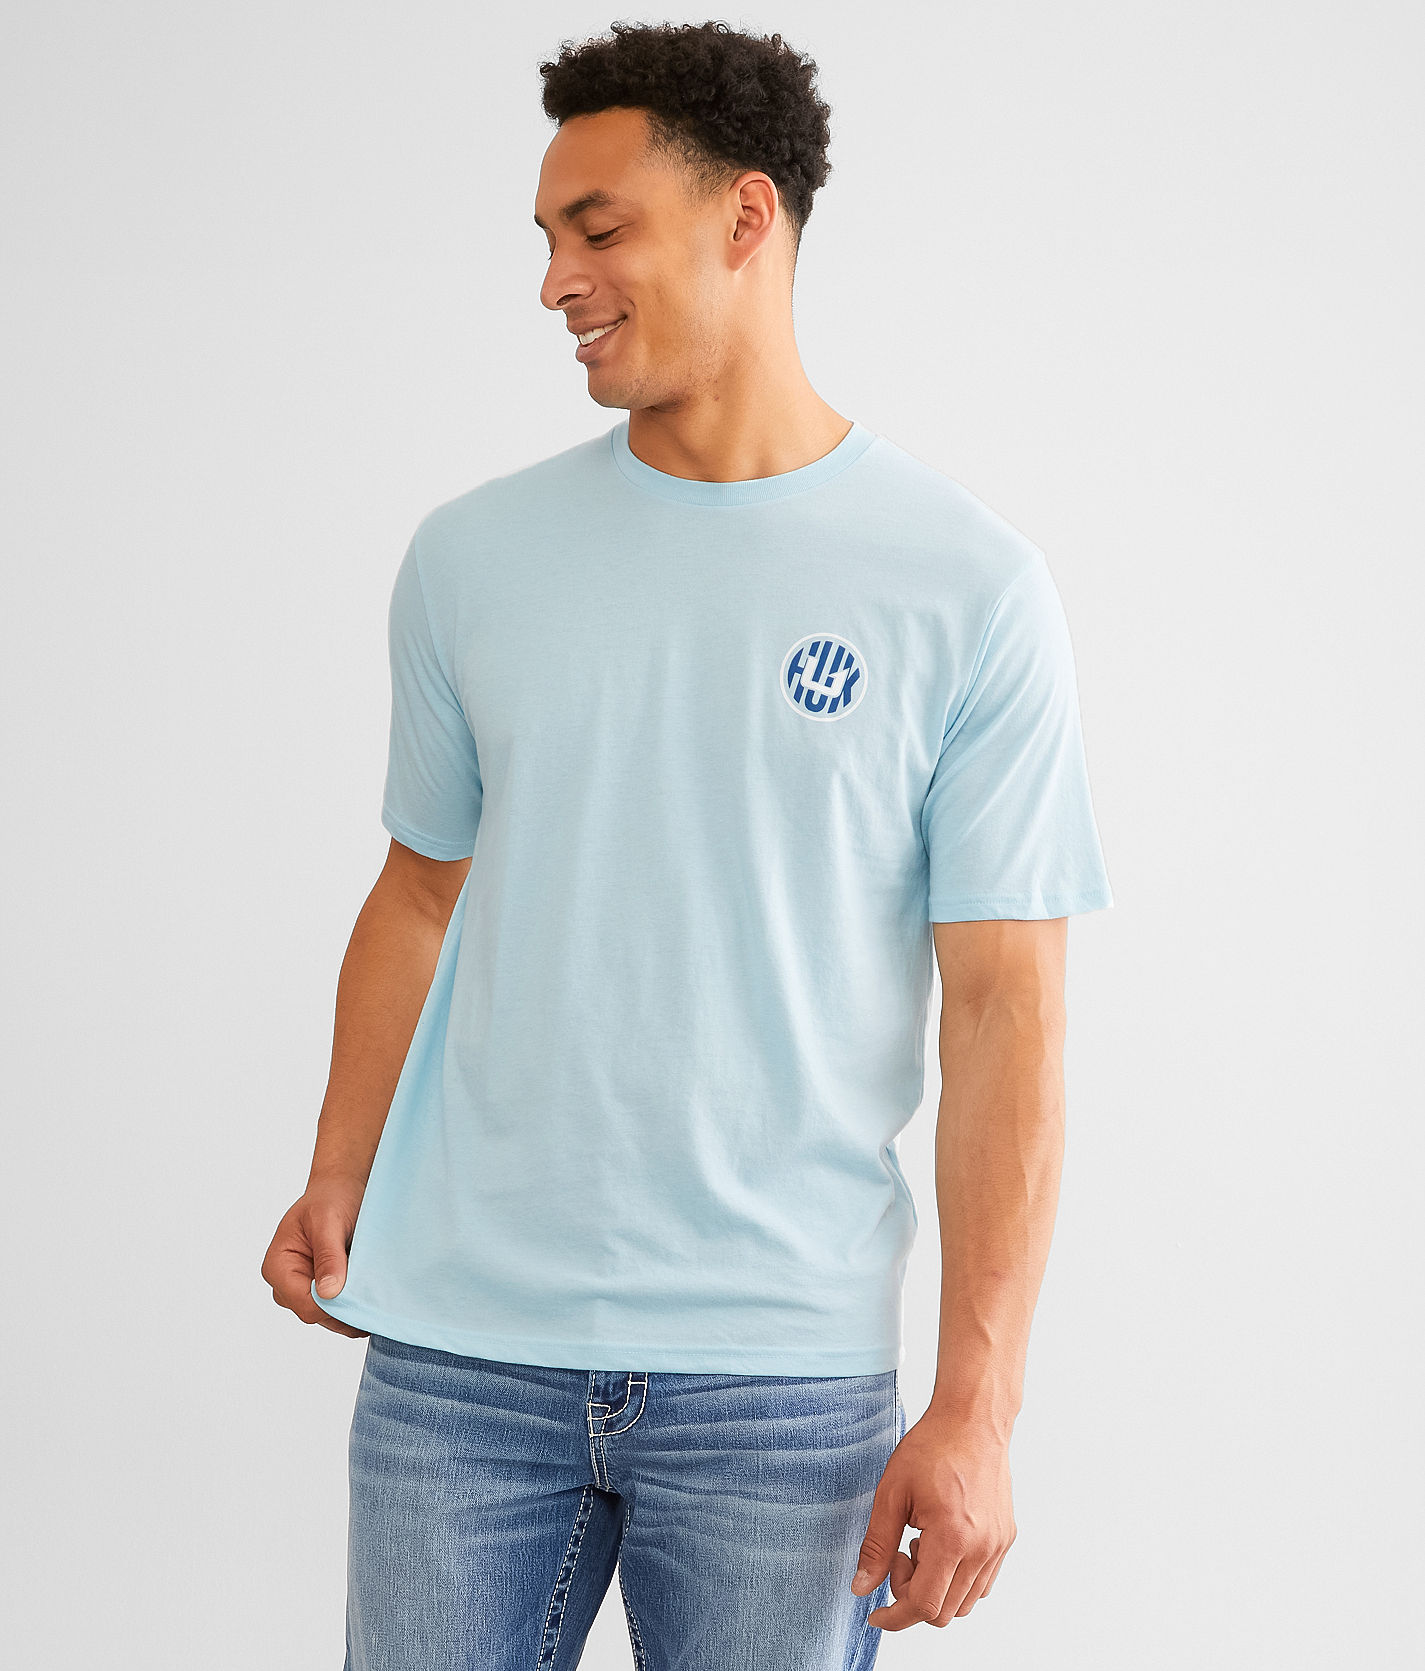 Huk Bass Banner T-Shirt - Blue Medium, Men's